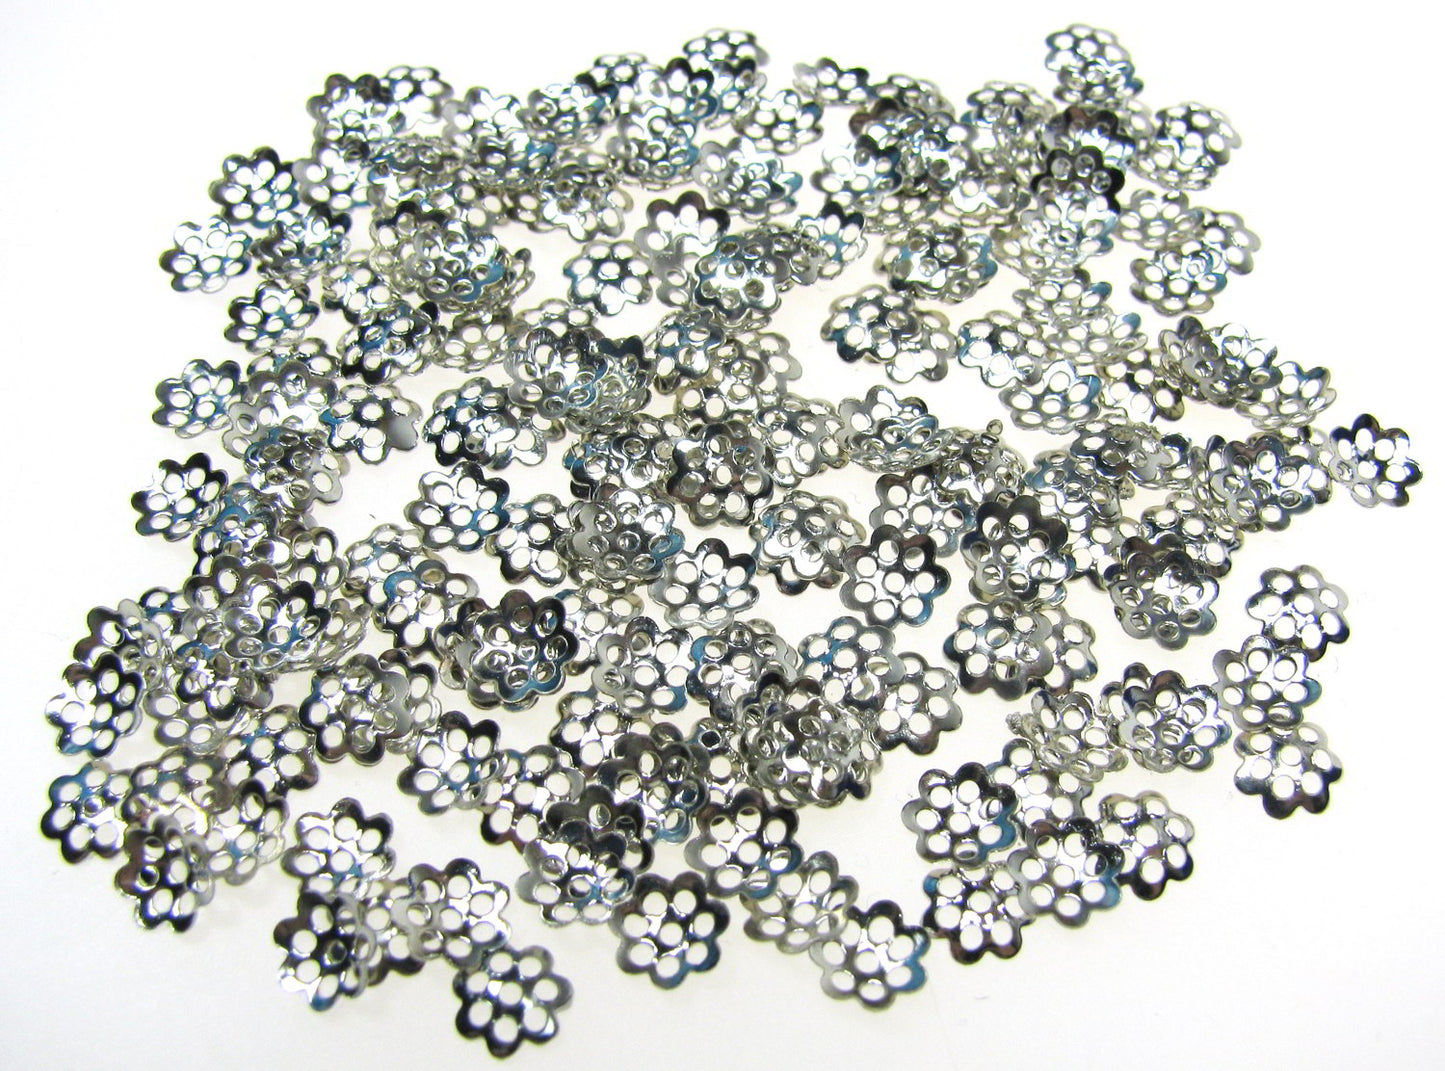 200 Perlkappen silberfarben dunkel 6mm, Schmuck, Perlen basteln, Blümchen, Blume